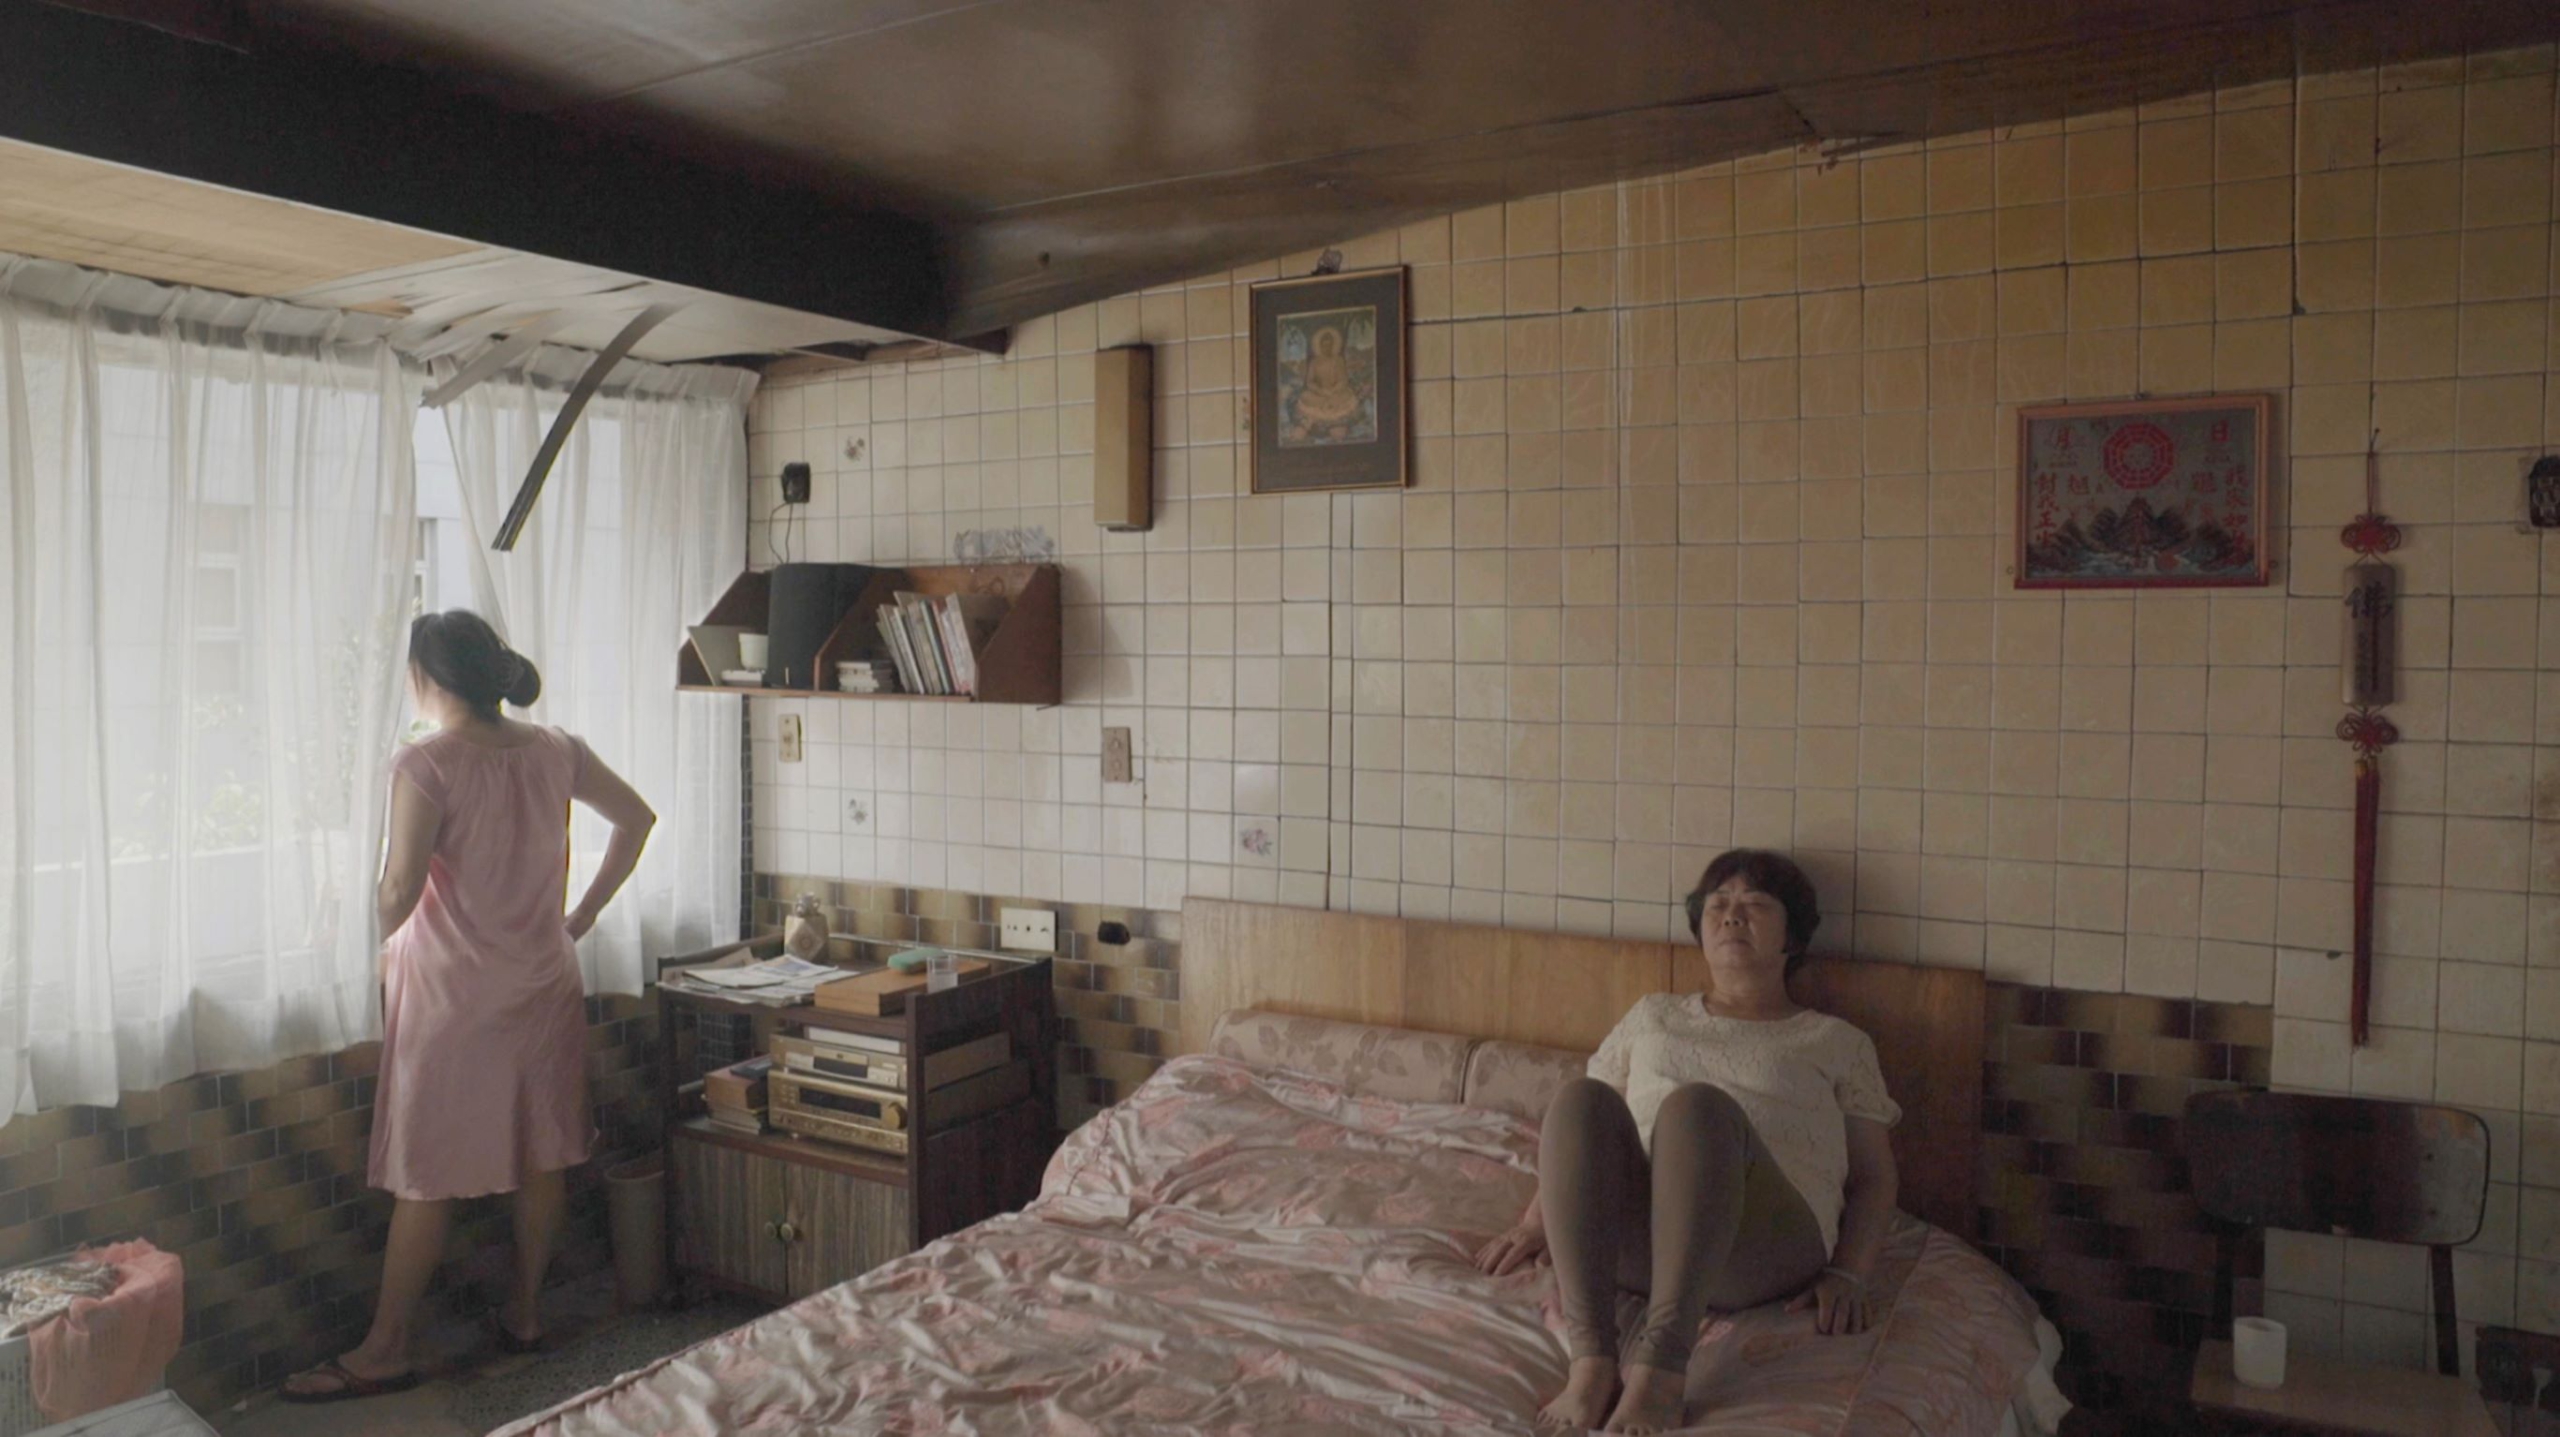 Karolina Breguła, Kurz (Dust), 2019, kadr z filmu (film still)